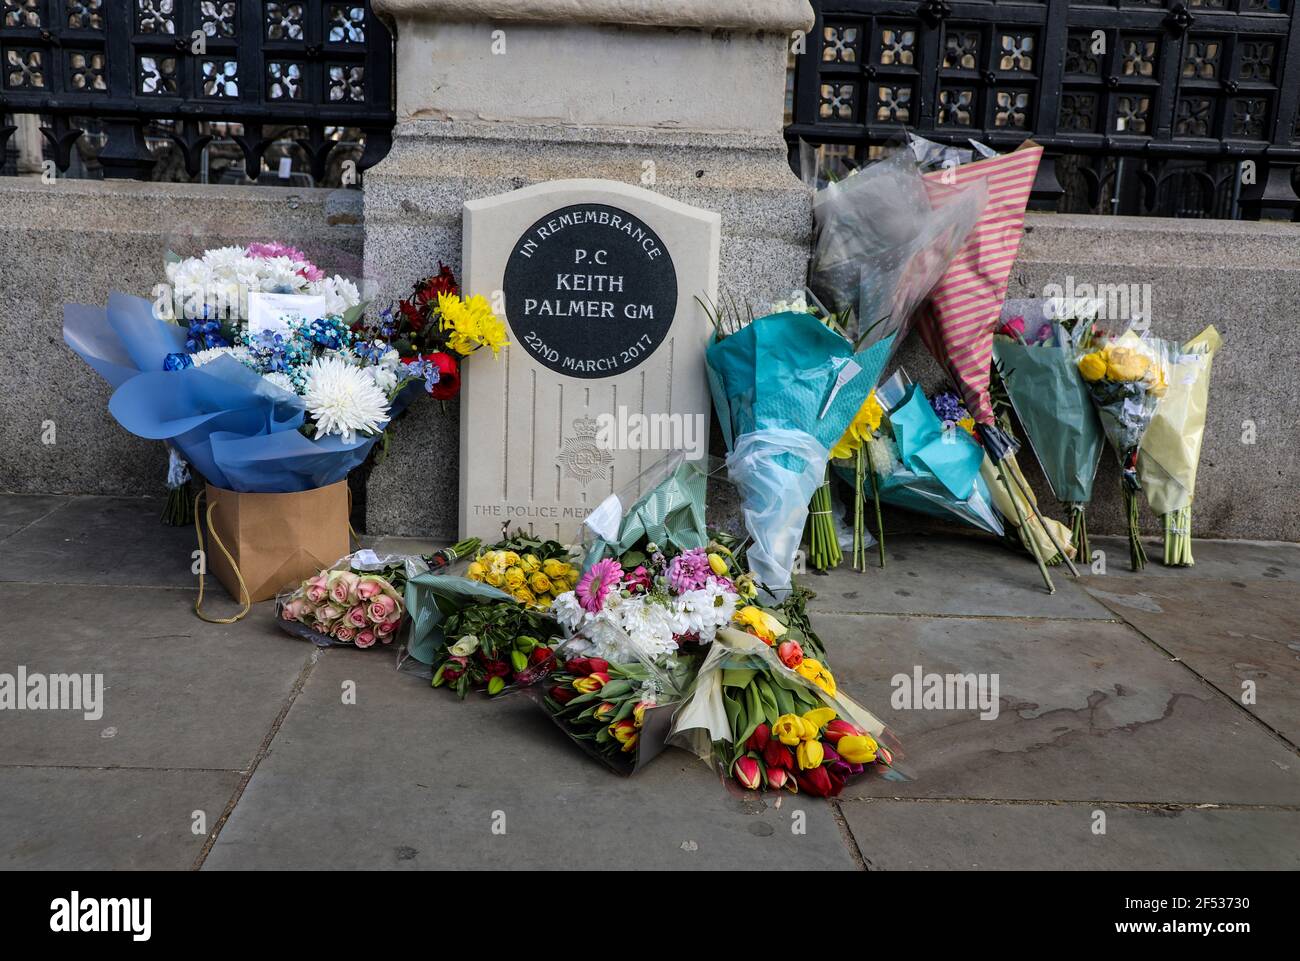 Les hommages floraux pour le PC Keith Palmer sont laissés sur la place du Parlement à l'occasion de l'anniversaire de l'attaque de terreur du pont de Westminster. Banque D'Images